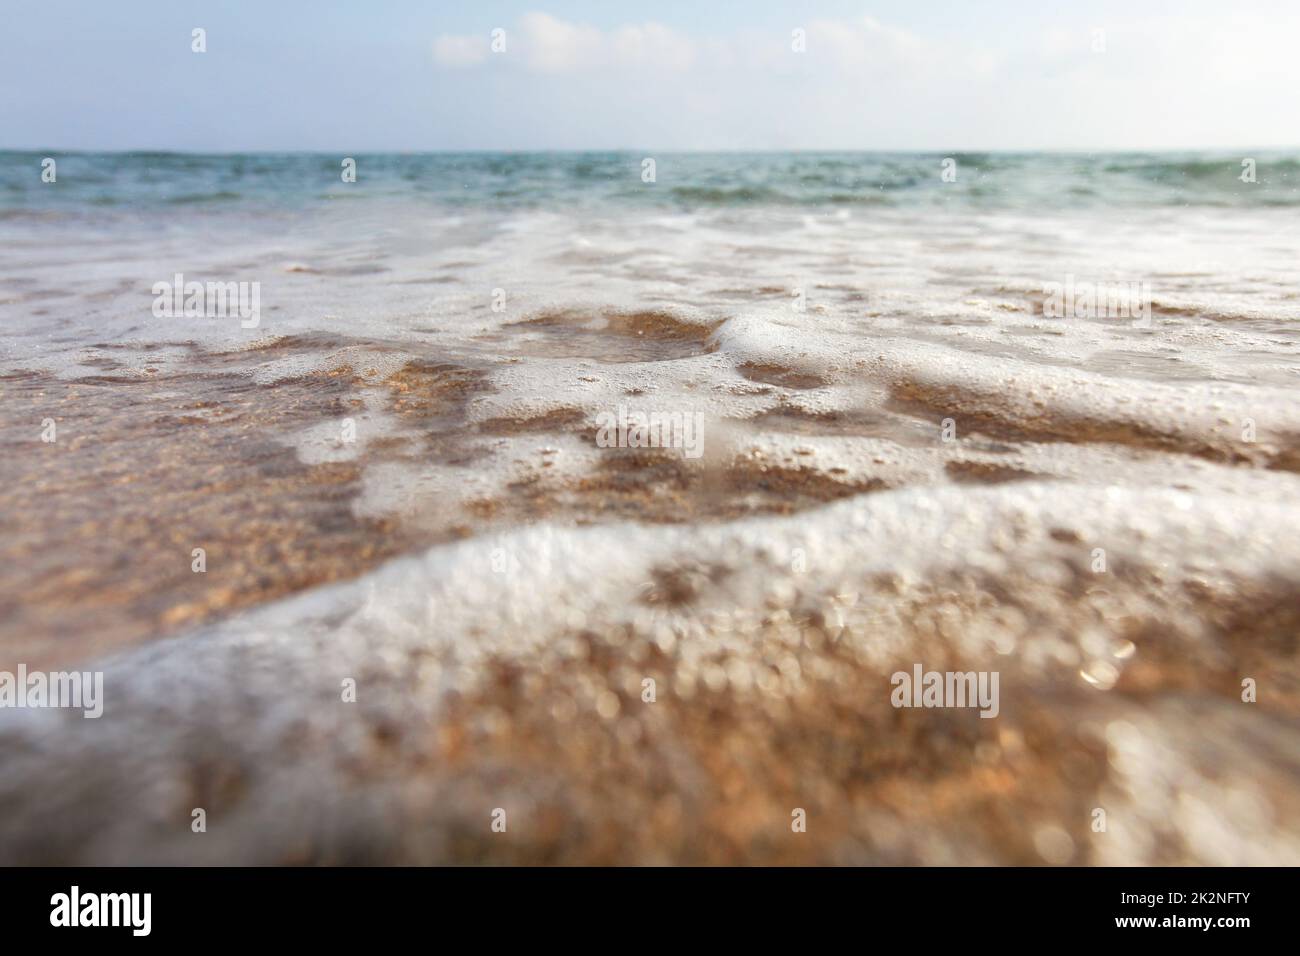 Niedriger Winkel, Kamera auf dem Boden, Objektiv mit Wassertropfen bedeckt, um Nässe hervorzuheben - Nahaufnahme von flachen Meereswellen, die den Sand am Strand waschen. Abstrakter Meereshintergrund. Stockfoto